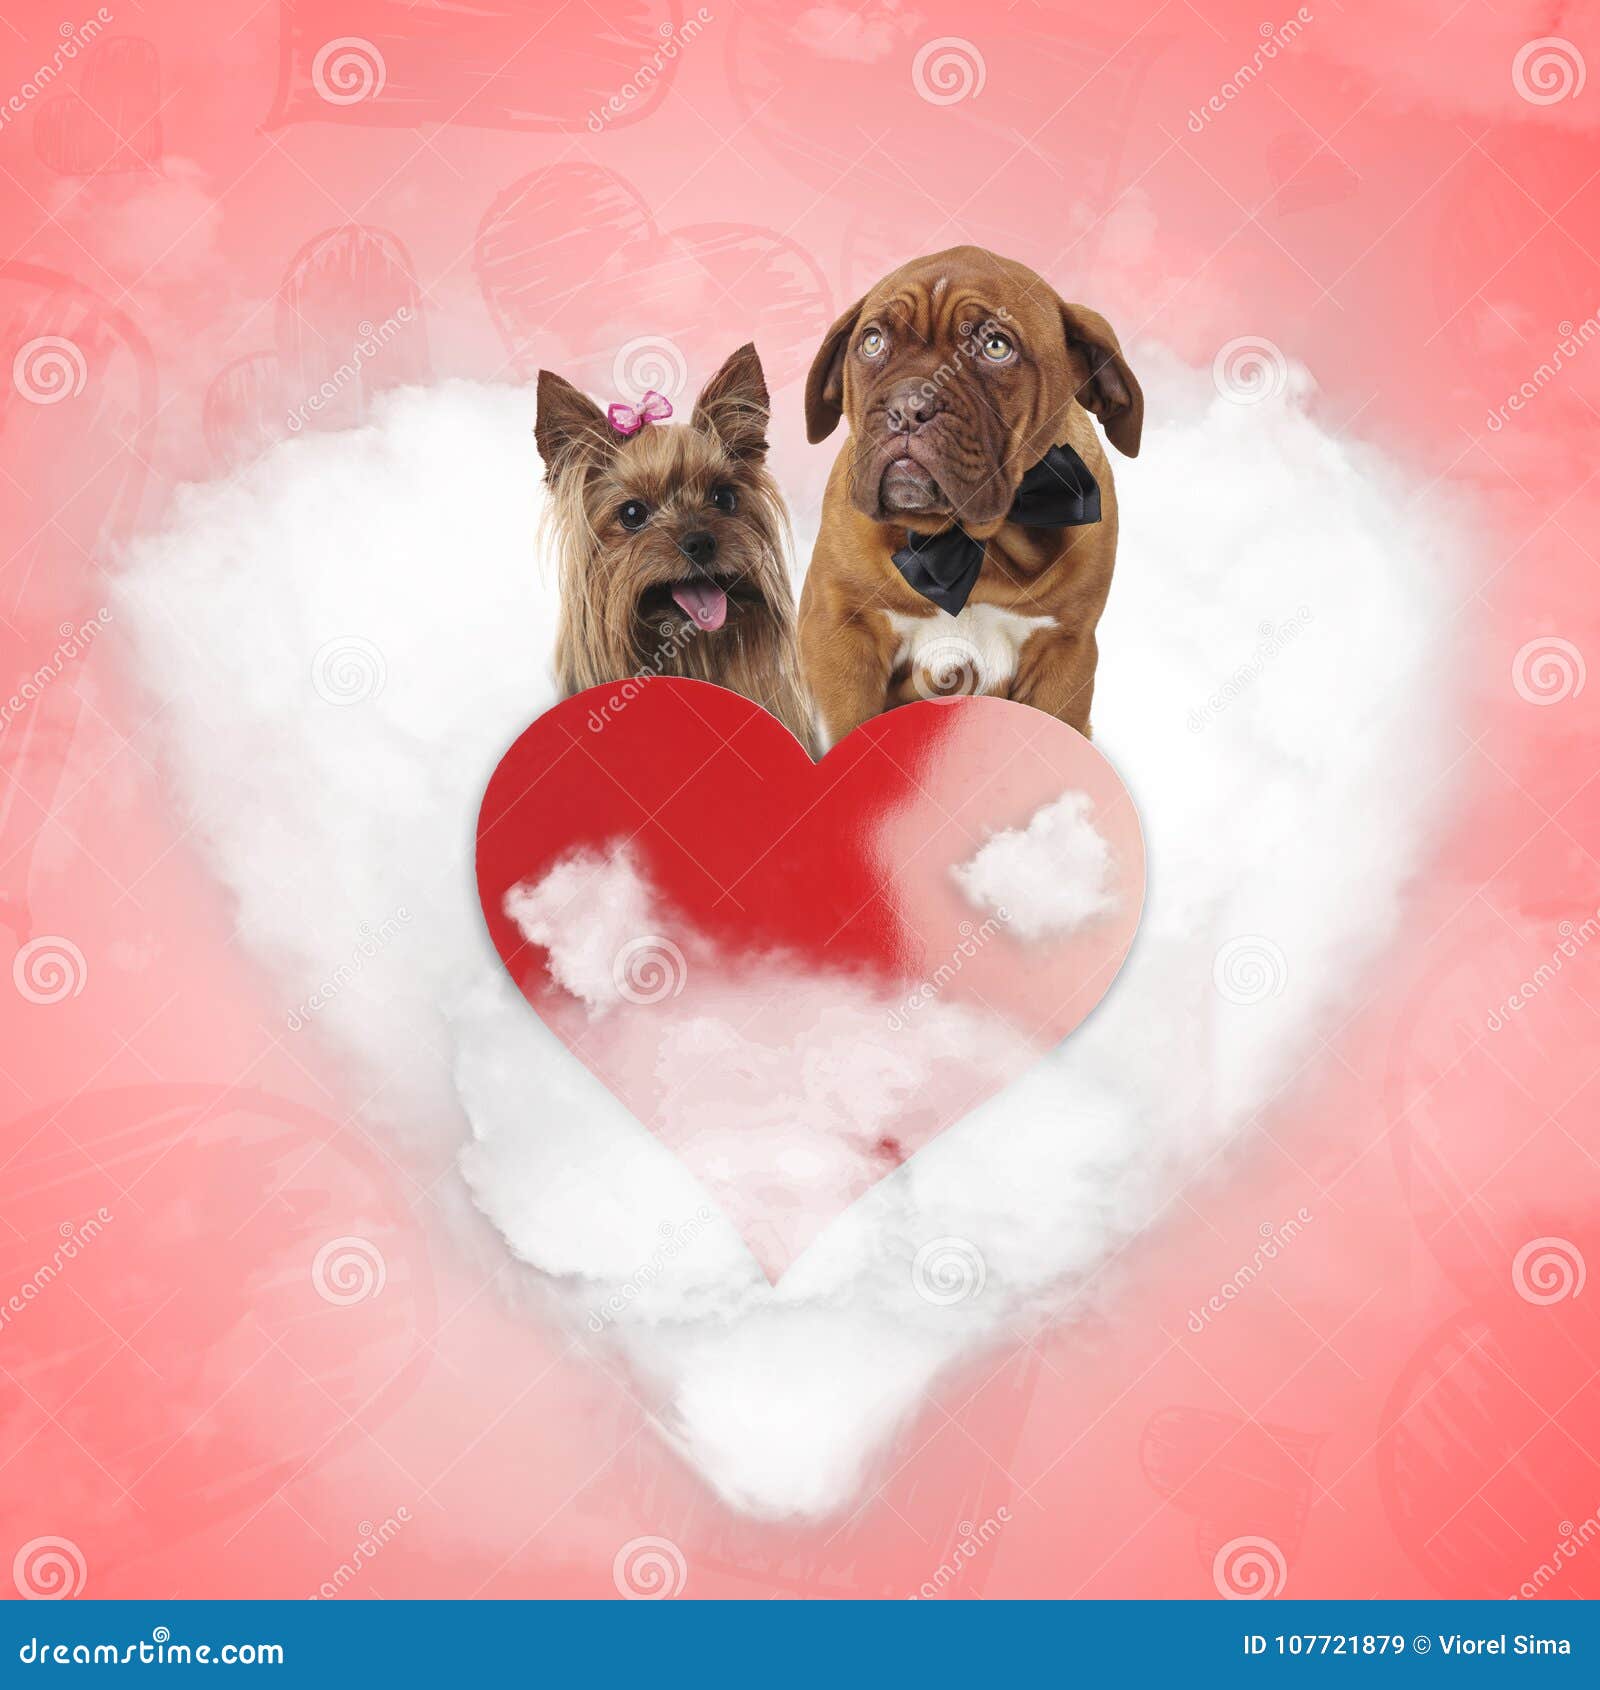 40,000+张最精彩的“爱狗”图片 · 100%免费下载 · Pexels素材图片